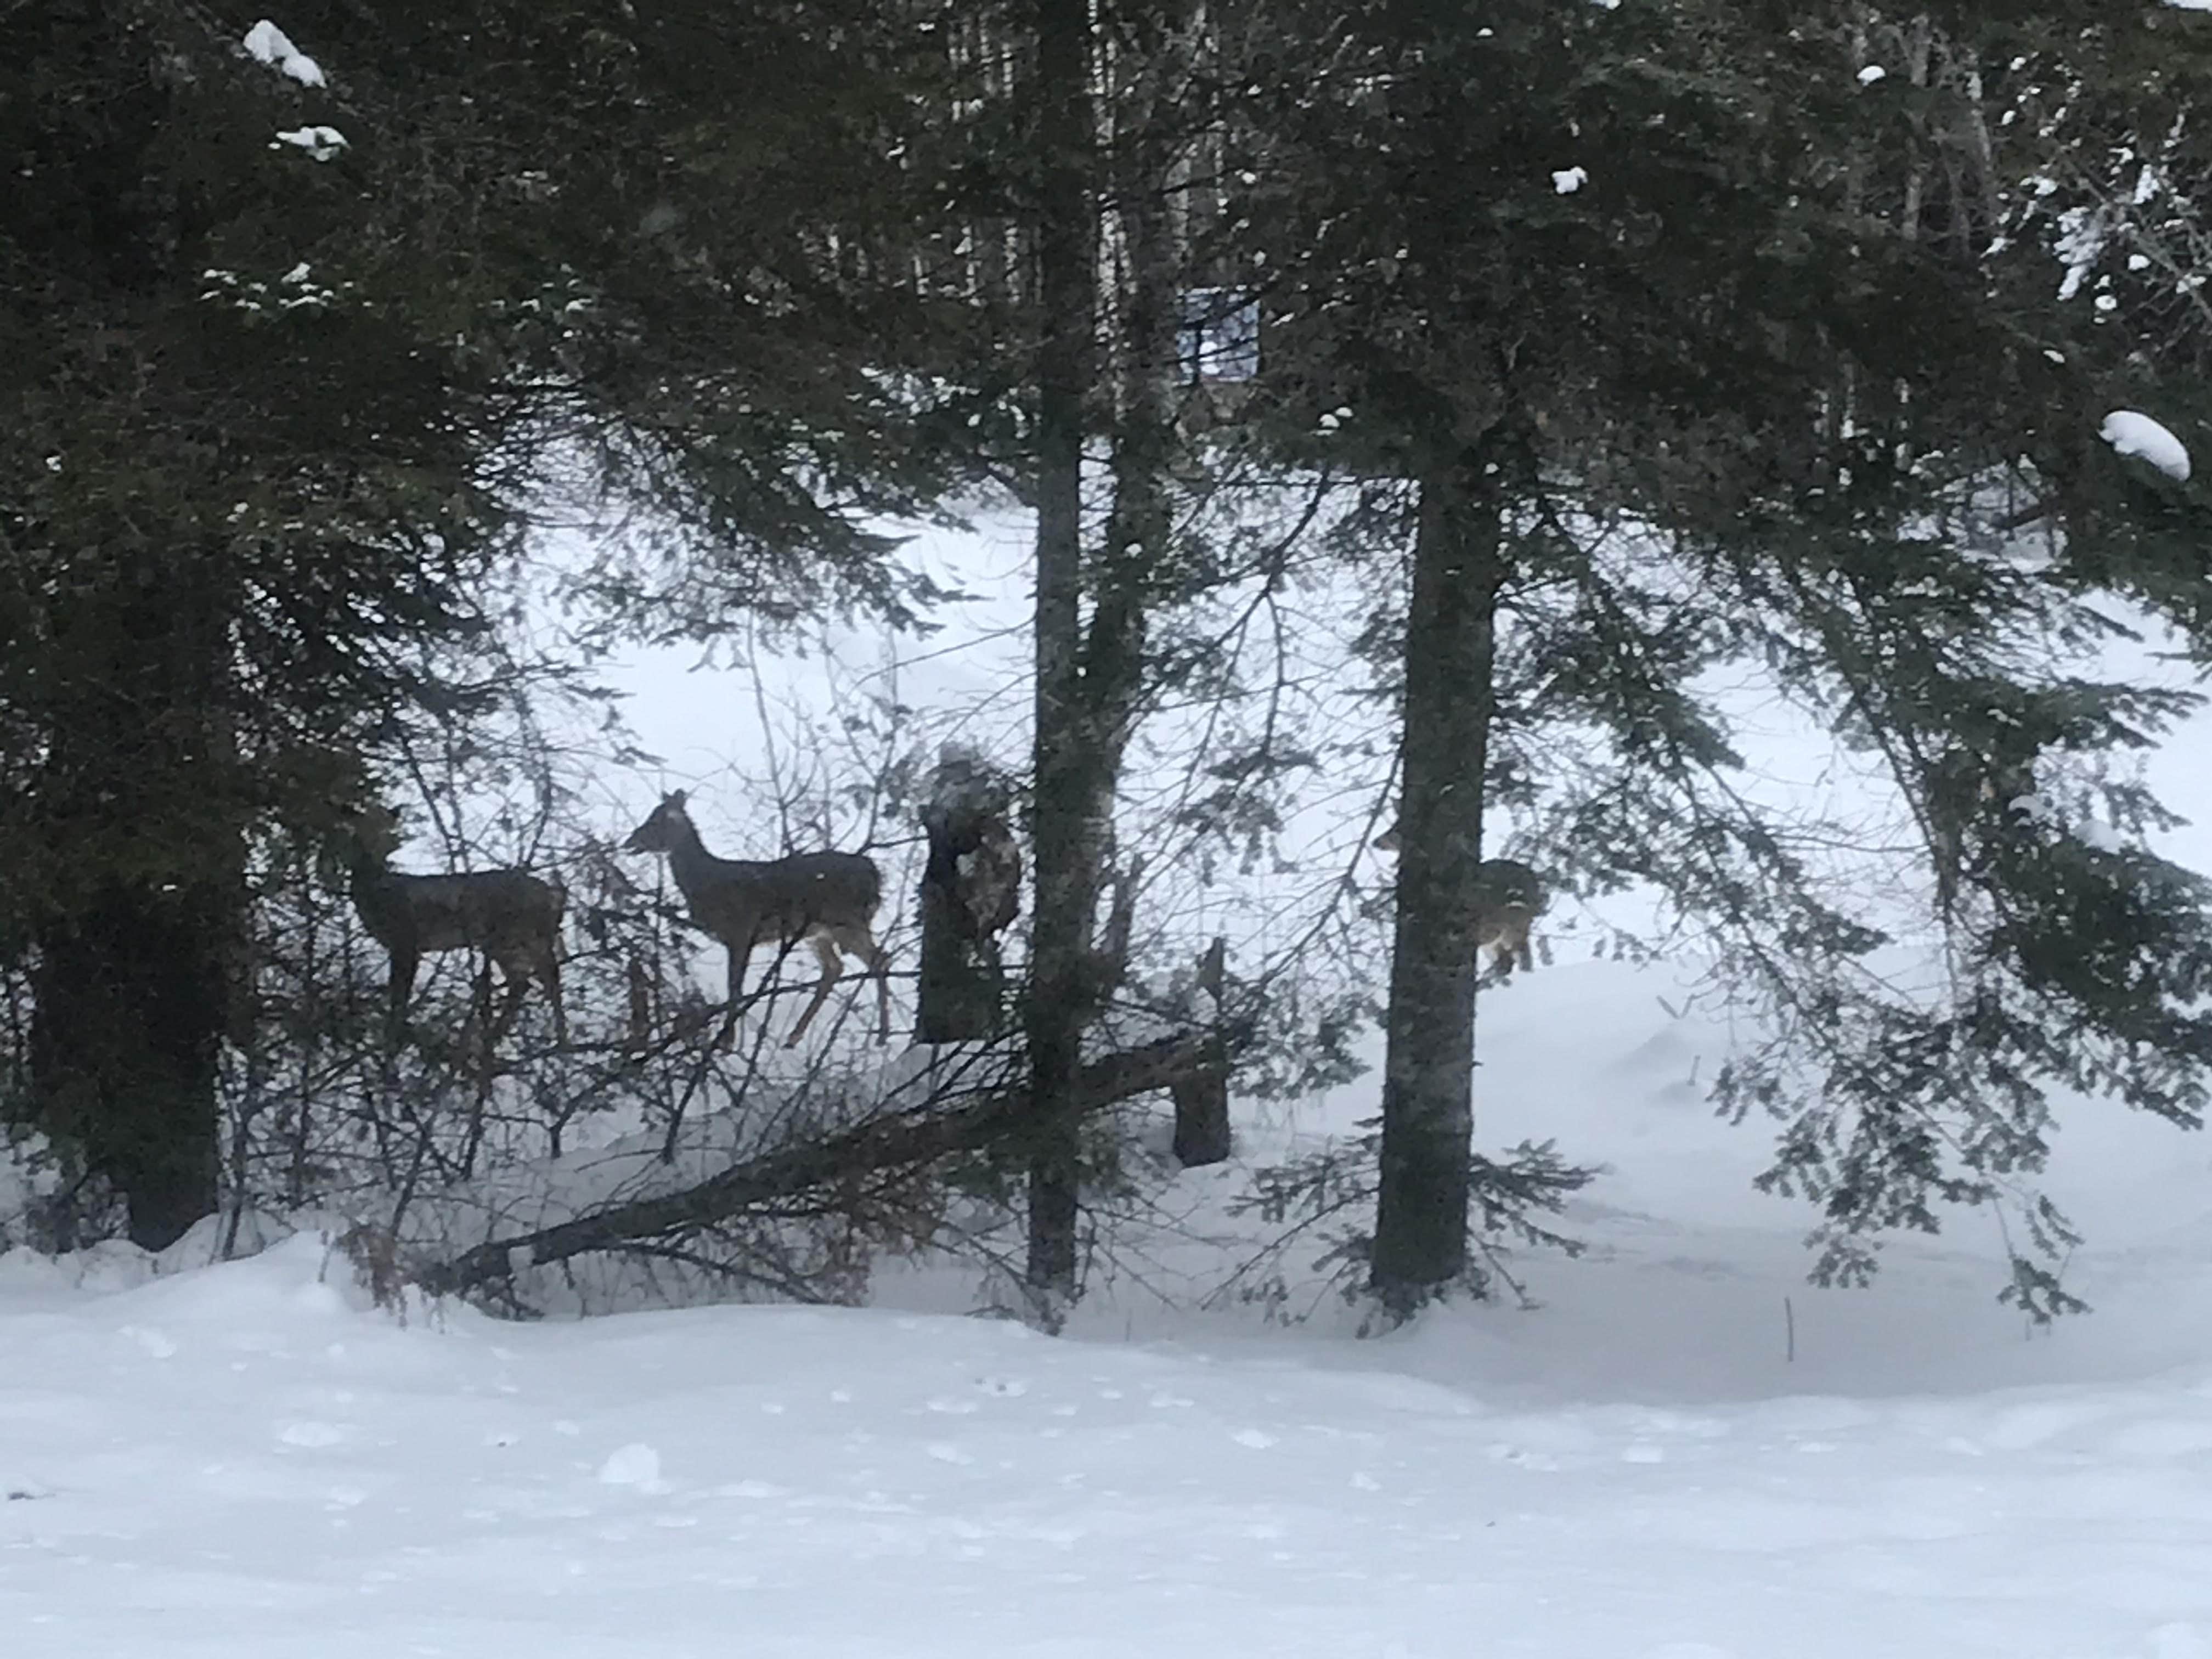 Two deer in snowy trees